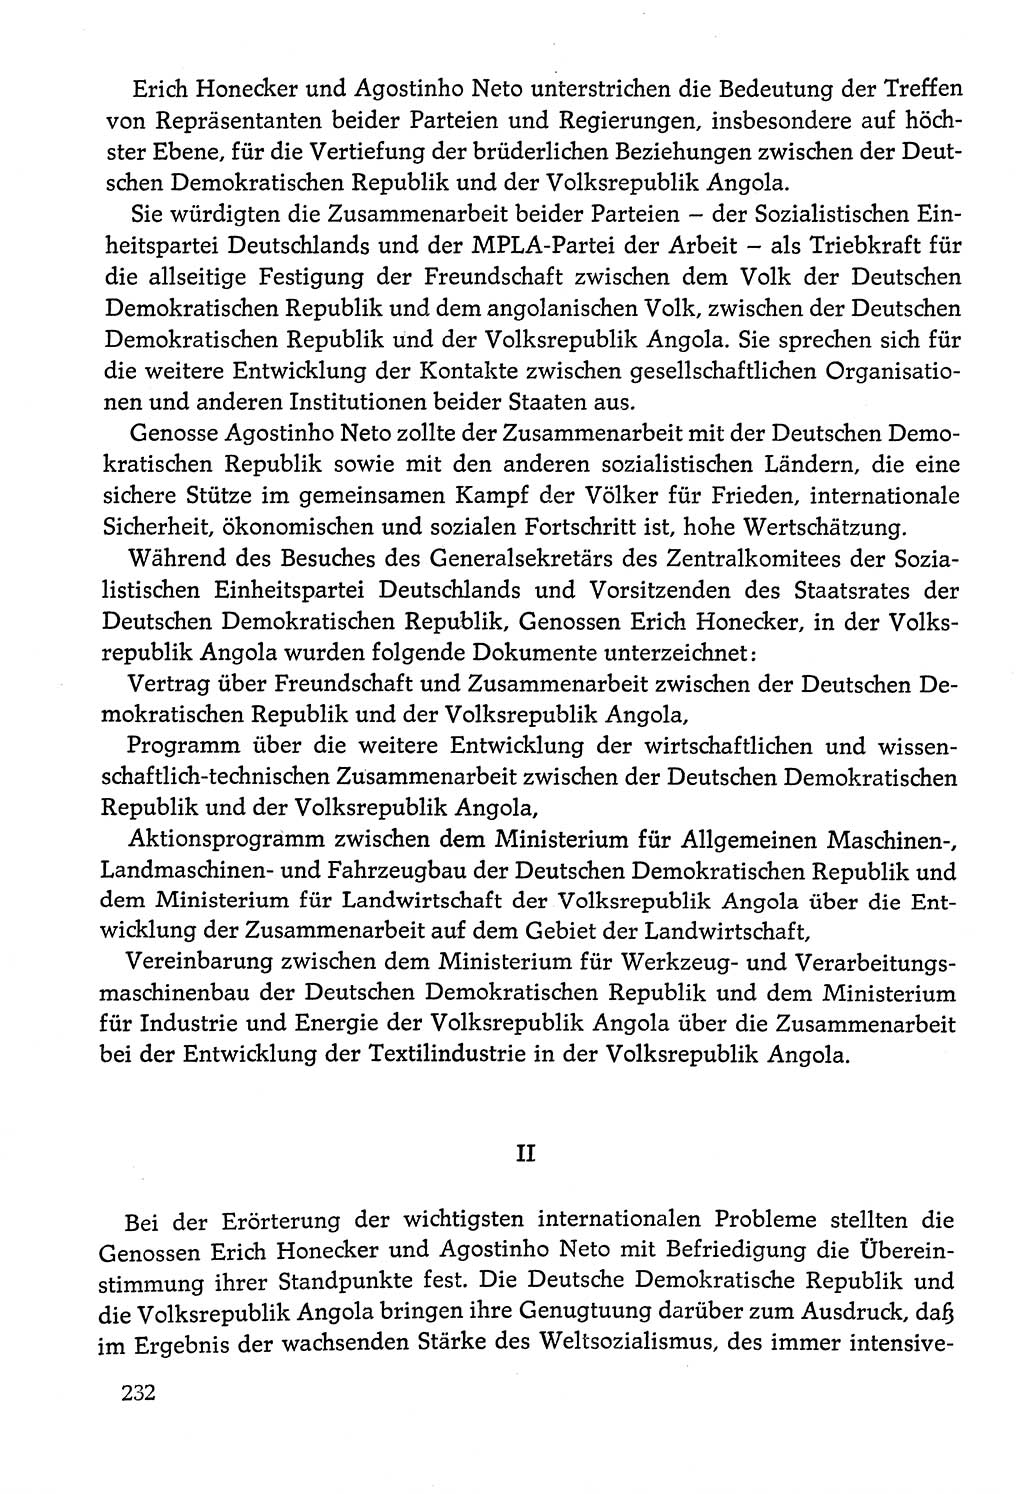 Dokumente der Sozialistischen Einheitspartei Deutschlands (SED) [Deutsche Demokratische Republik (DDR)] 1978-1979, Seite 232 (Dok. SED DDR 1978-1979, S. 232)